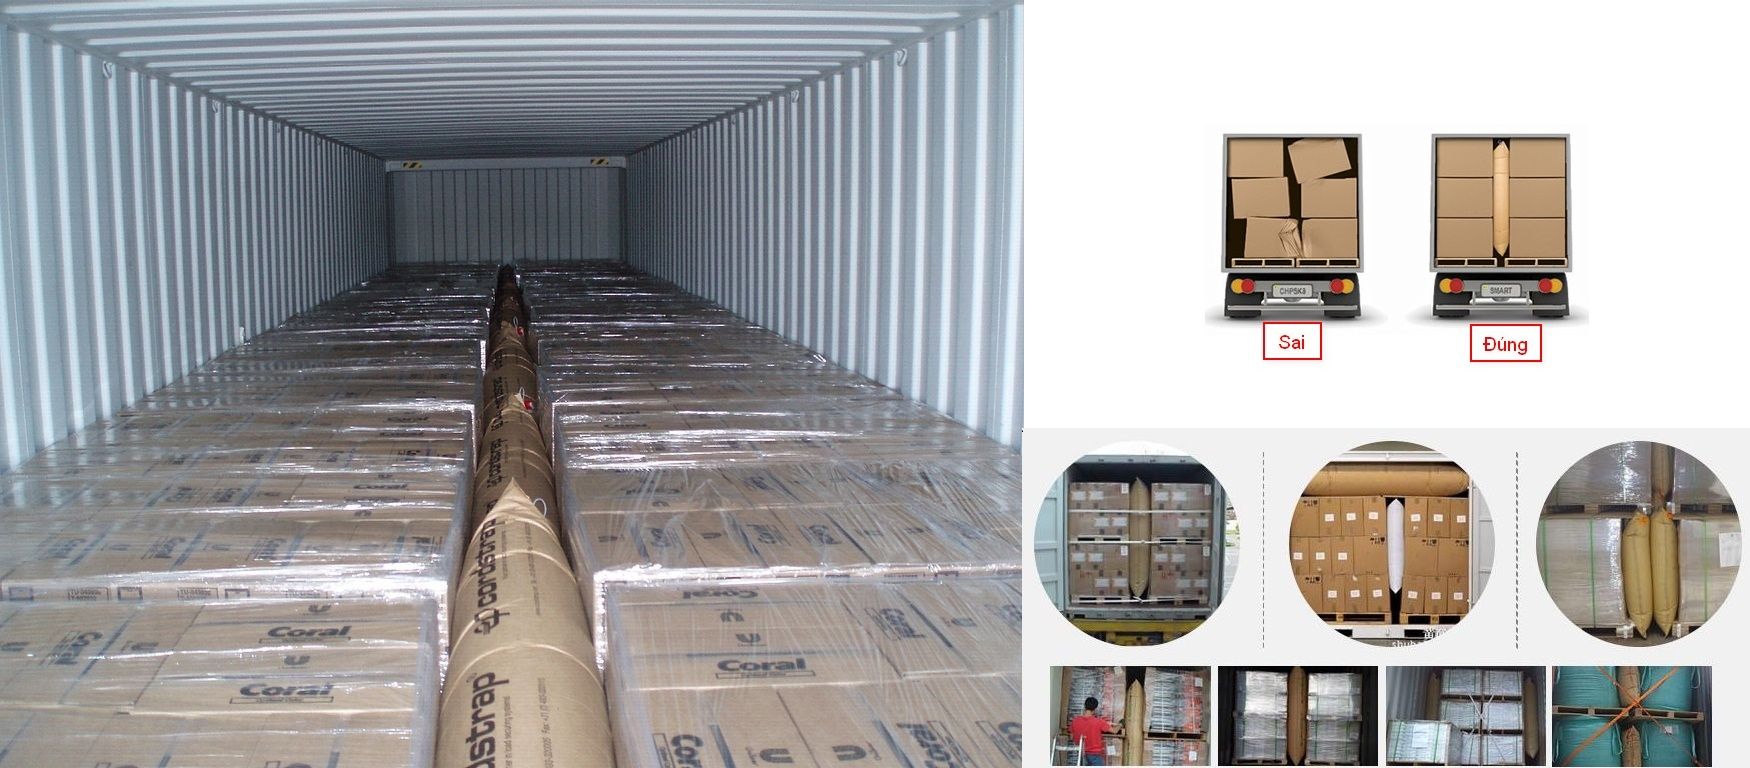 Các nguyên tắc cơ bản khi sắp xếp hàng hóa trong container dễ bị bỏ qua - Ảnh 1